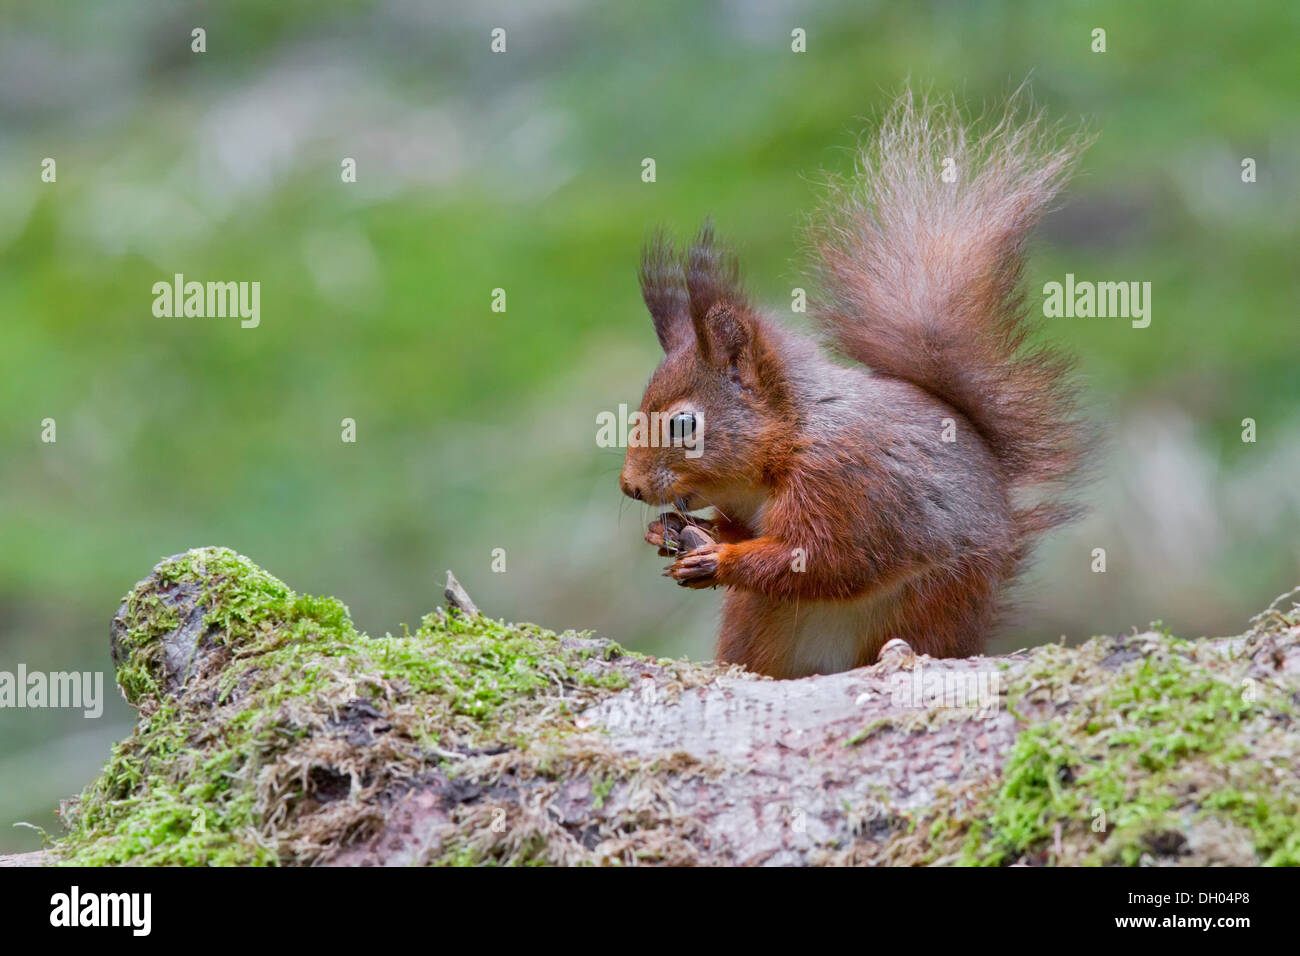 Red squirrel (Sciurus vulgaris), north west England, United Kingdom, Europe Stock Photo